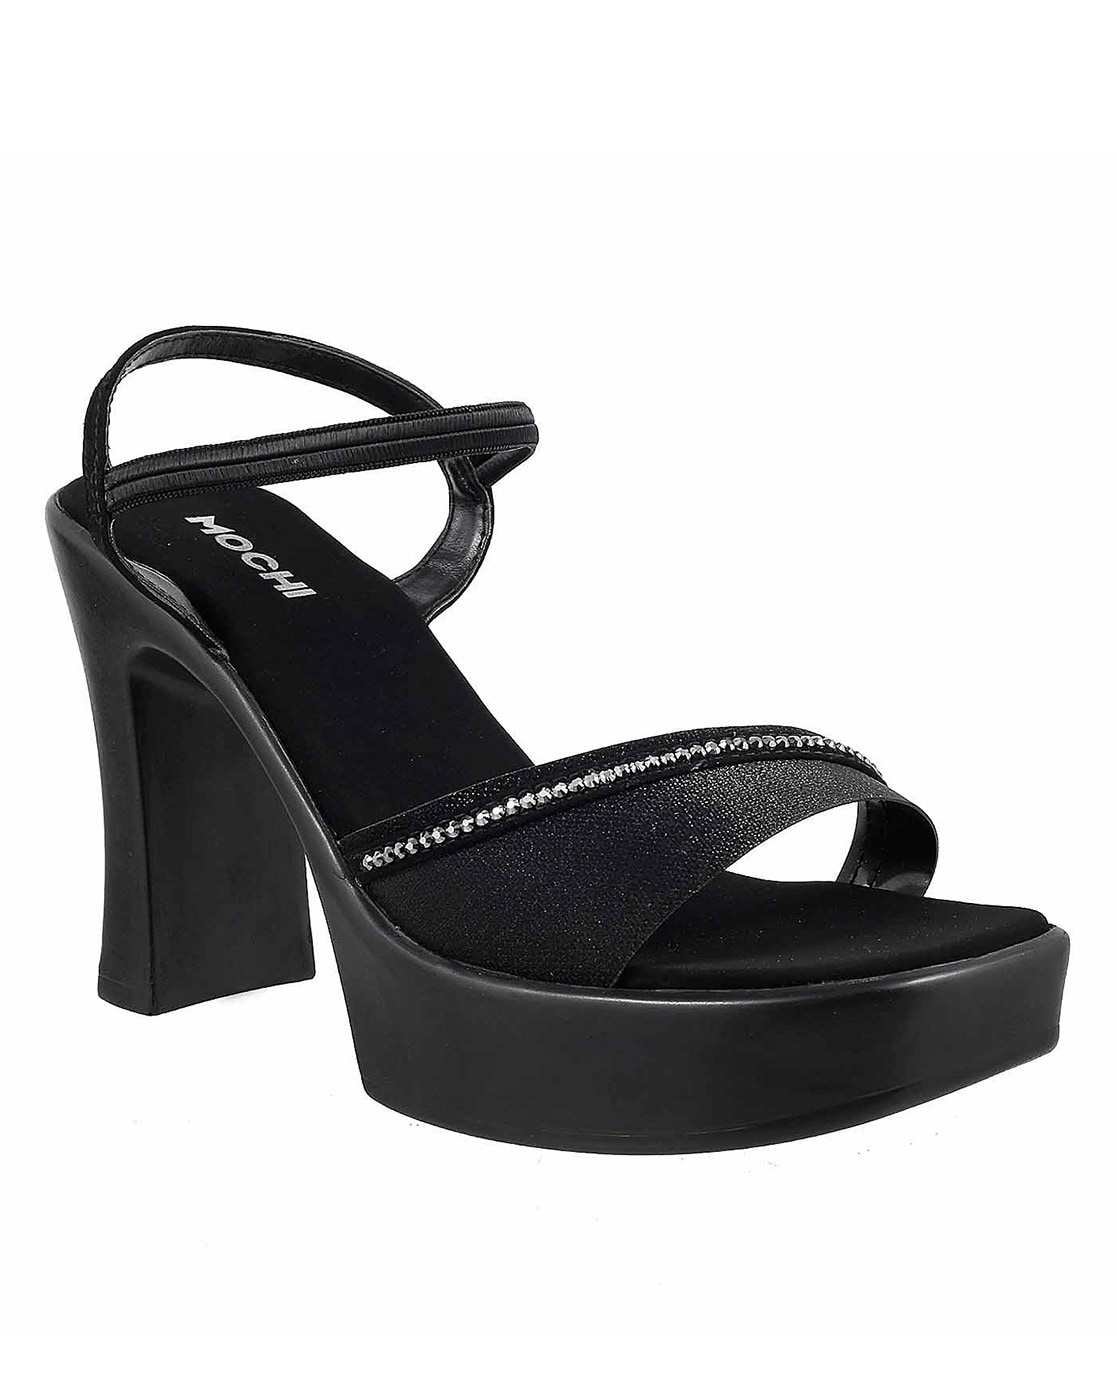 Mochi Heels - Buy Mochi High Heel Sandals for Women Online